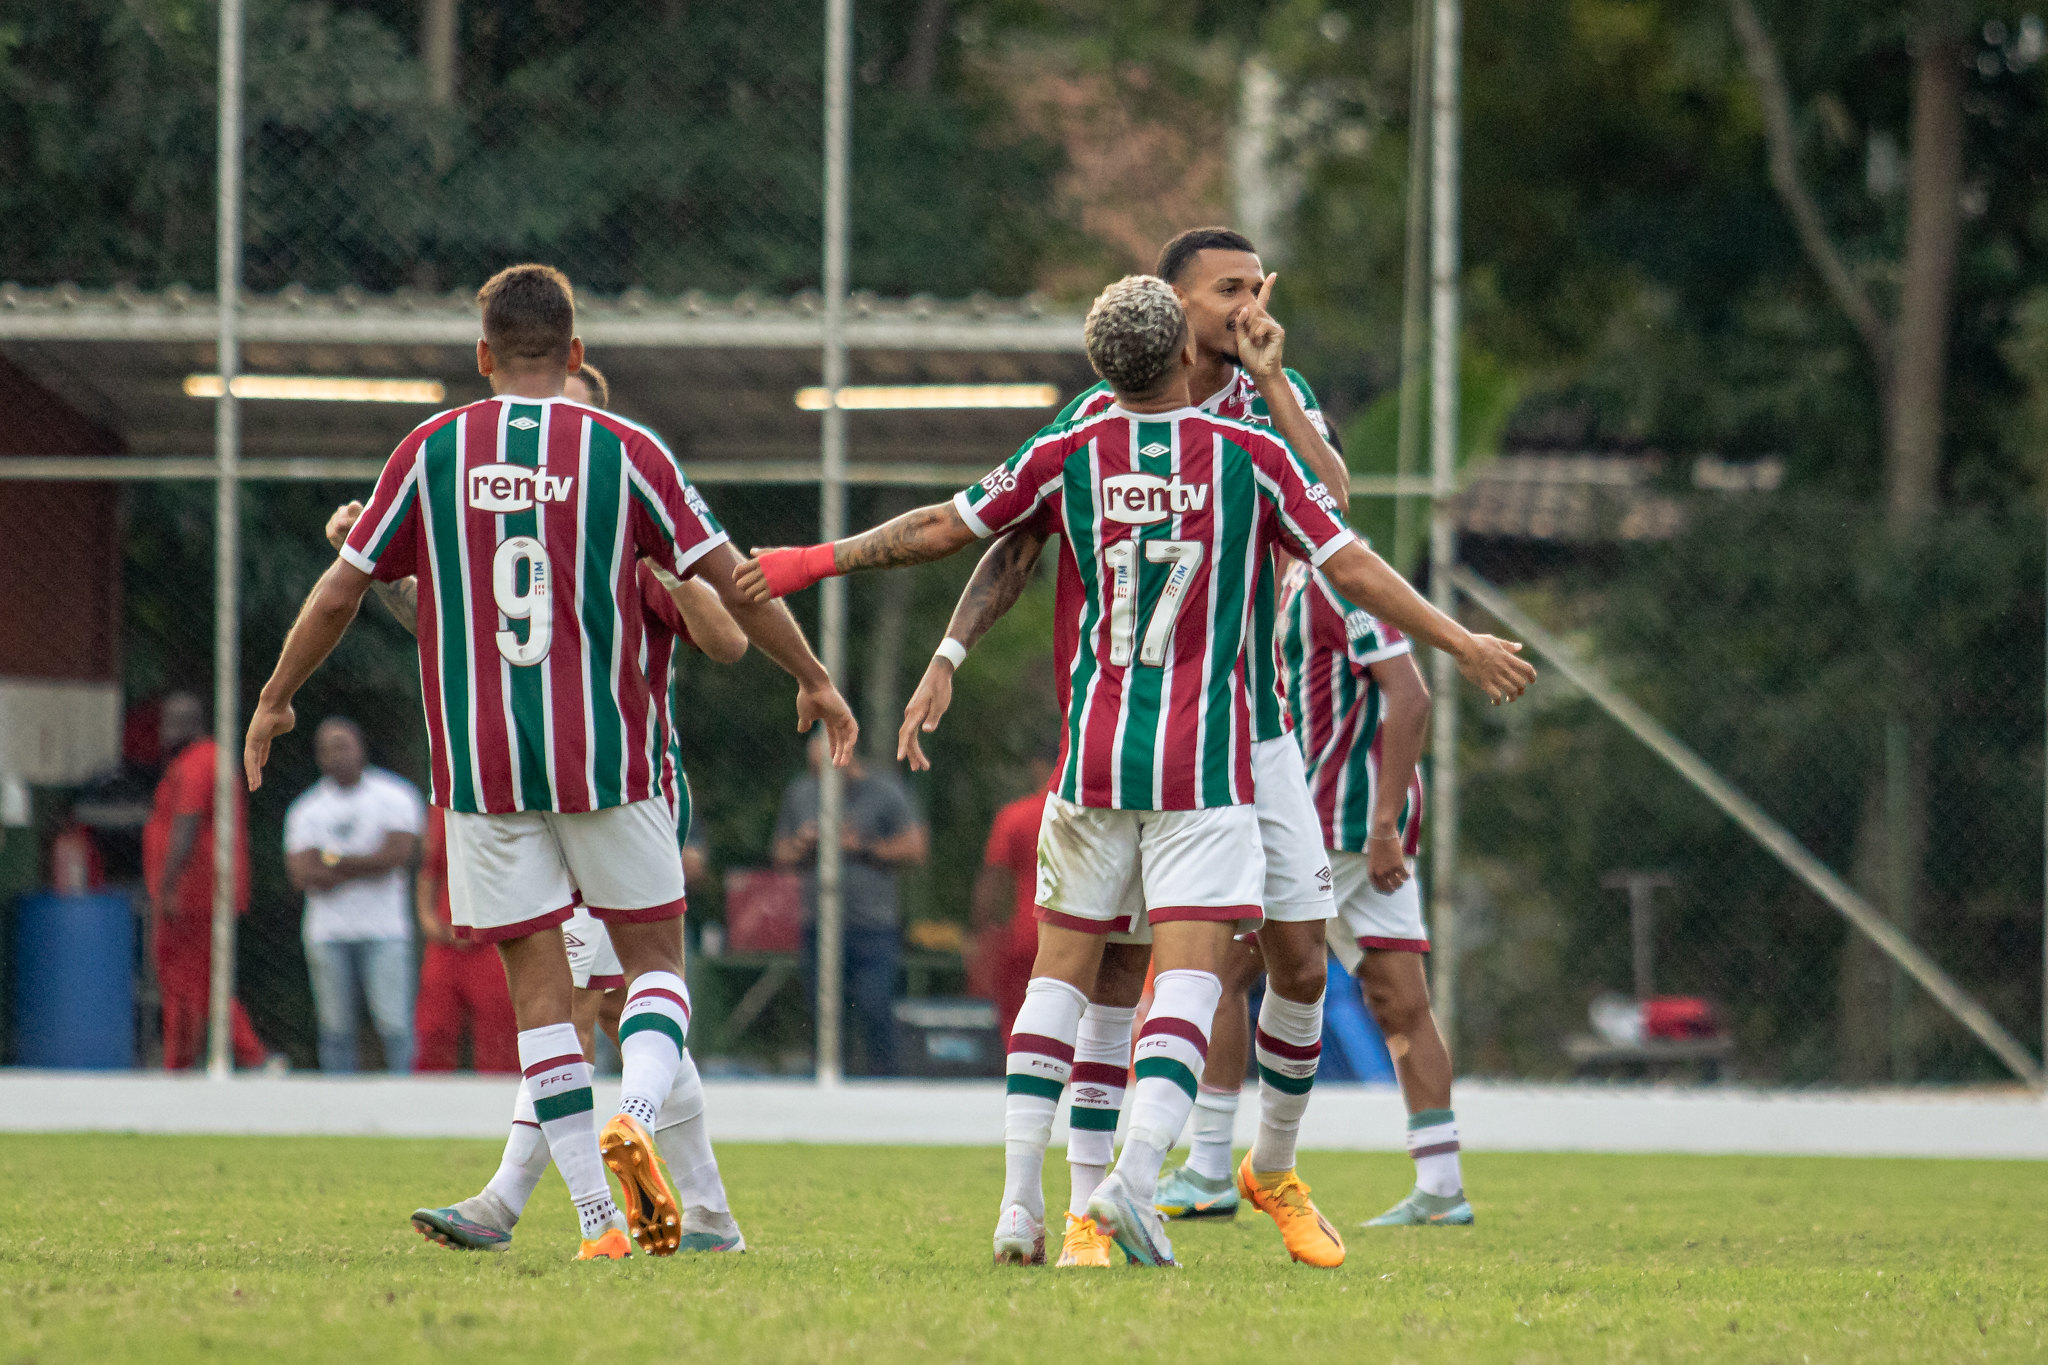 Jefté comenta bom momento do Sub-20 e classificação no Carioca — Fluminense  Football Club